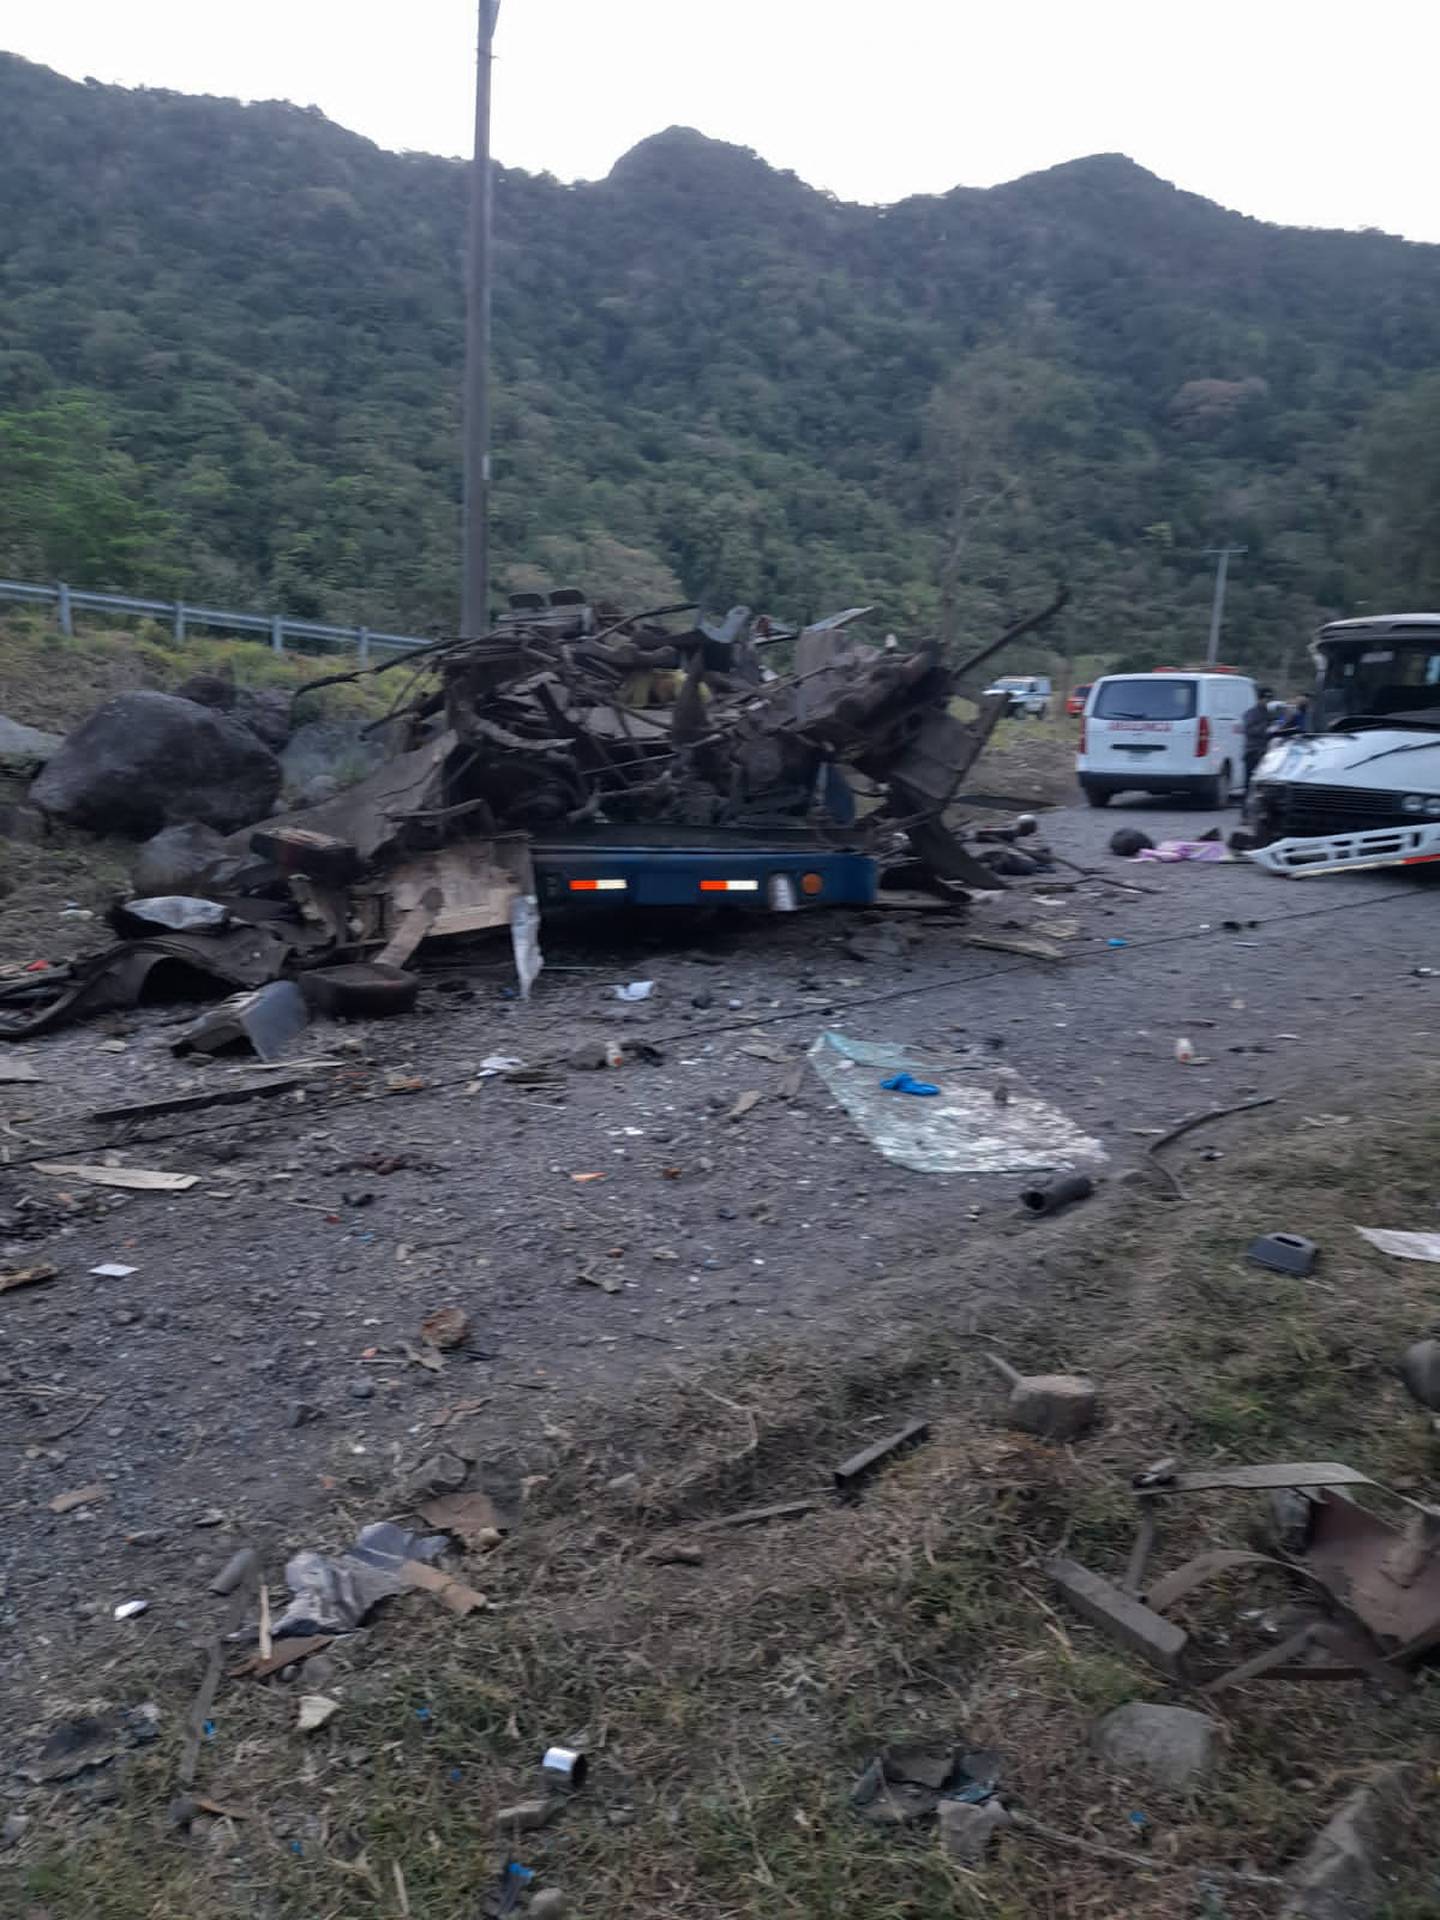 Lamentablemente hay ecuatorianos fallecidos entre los 39 migrantes en trágico accidente de bus en Panamá